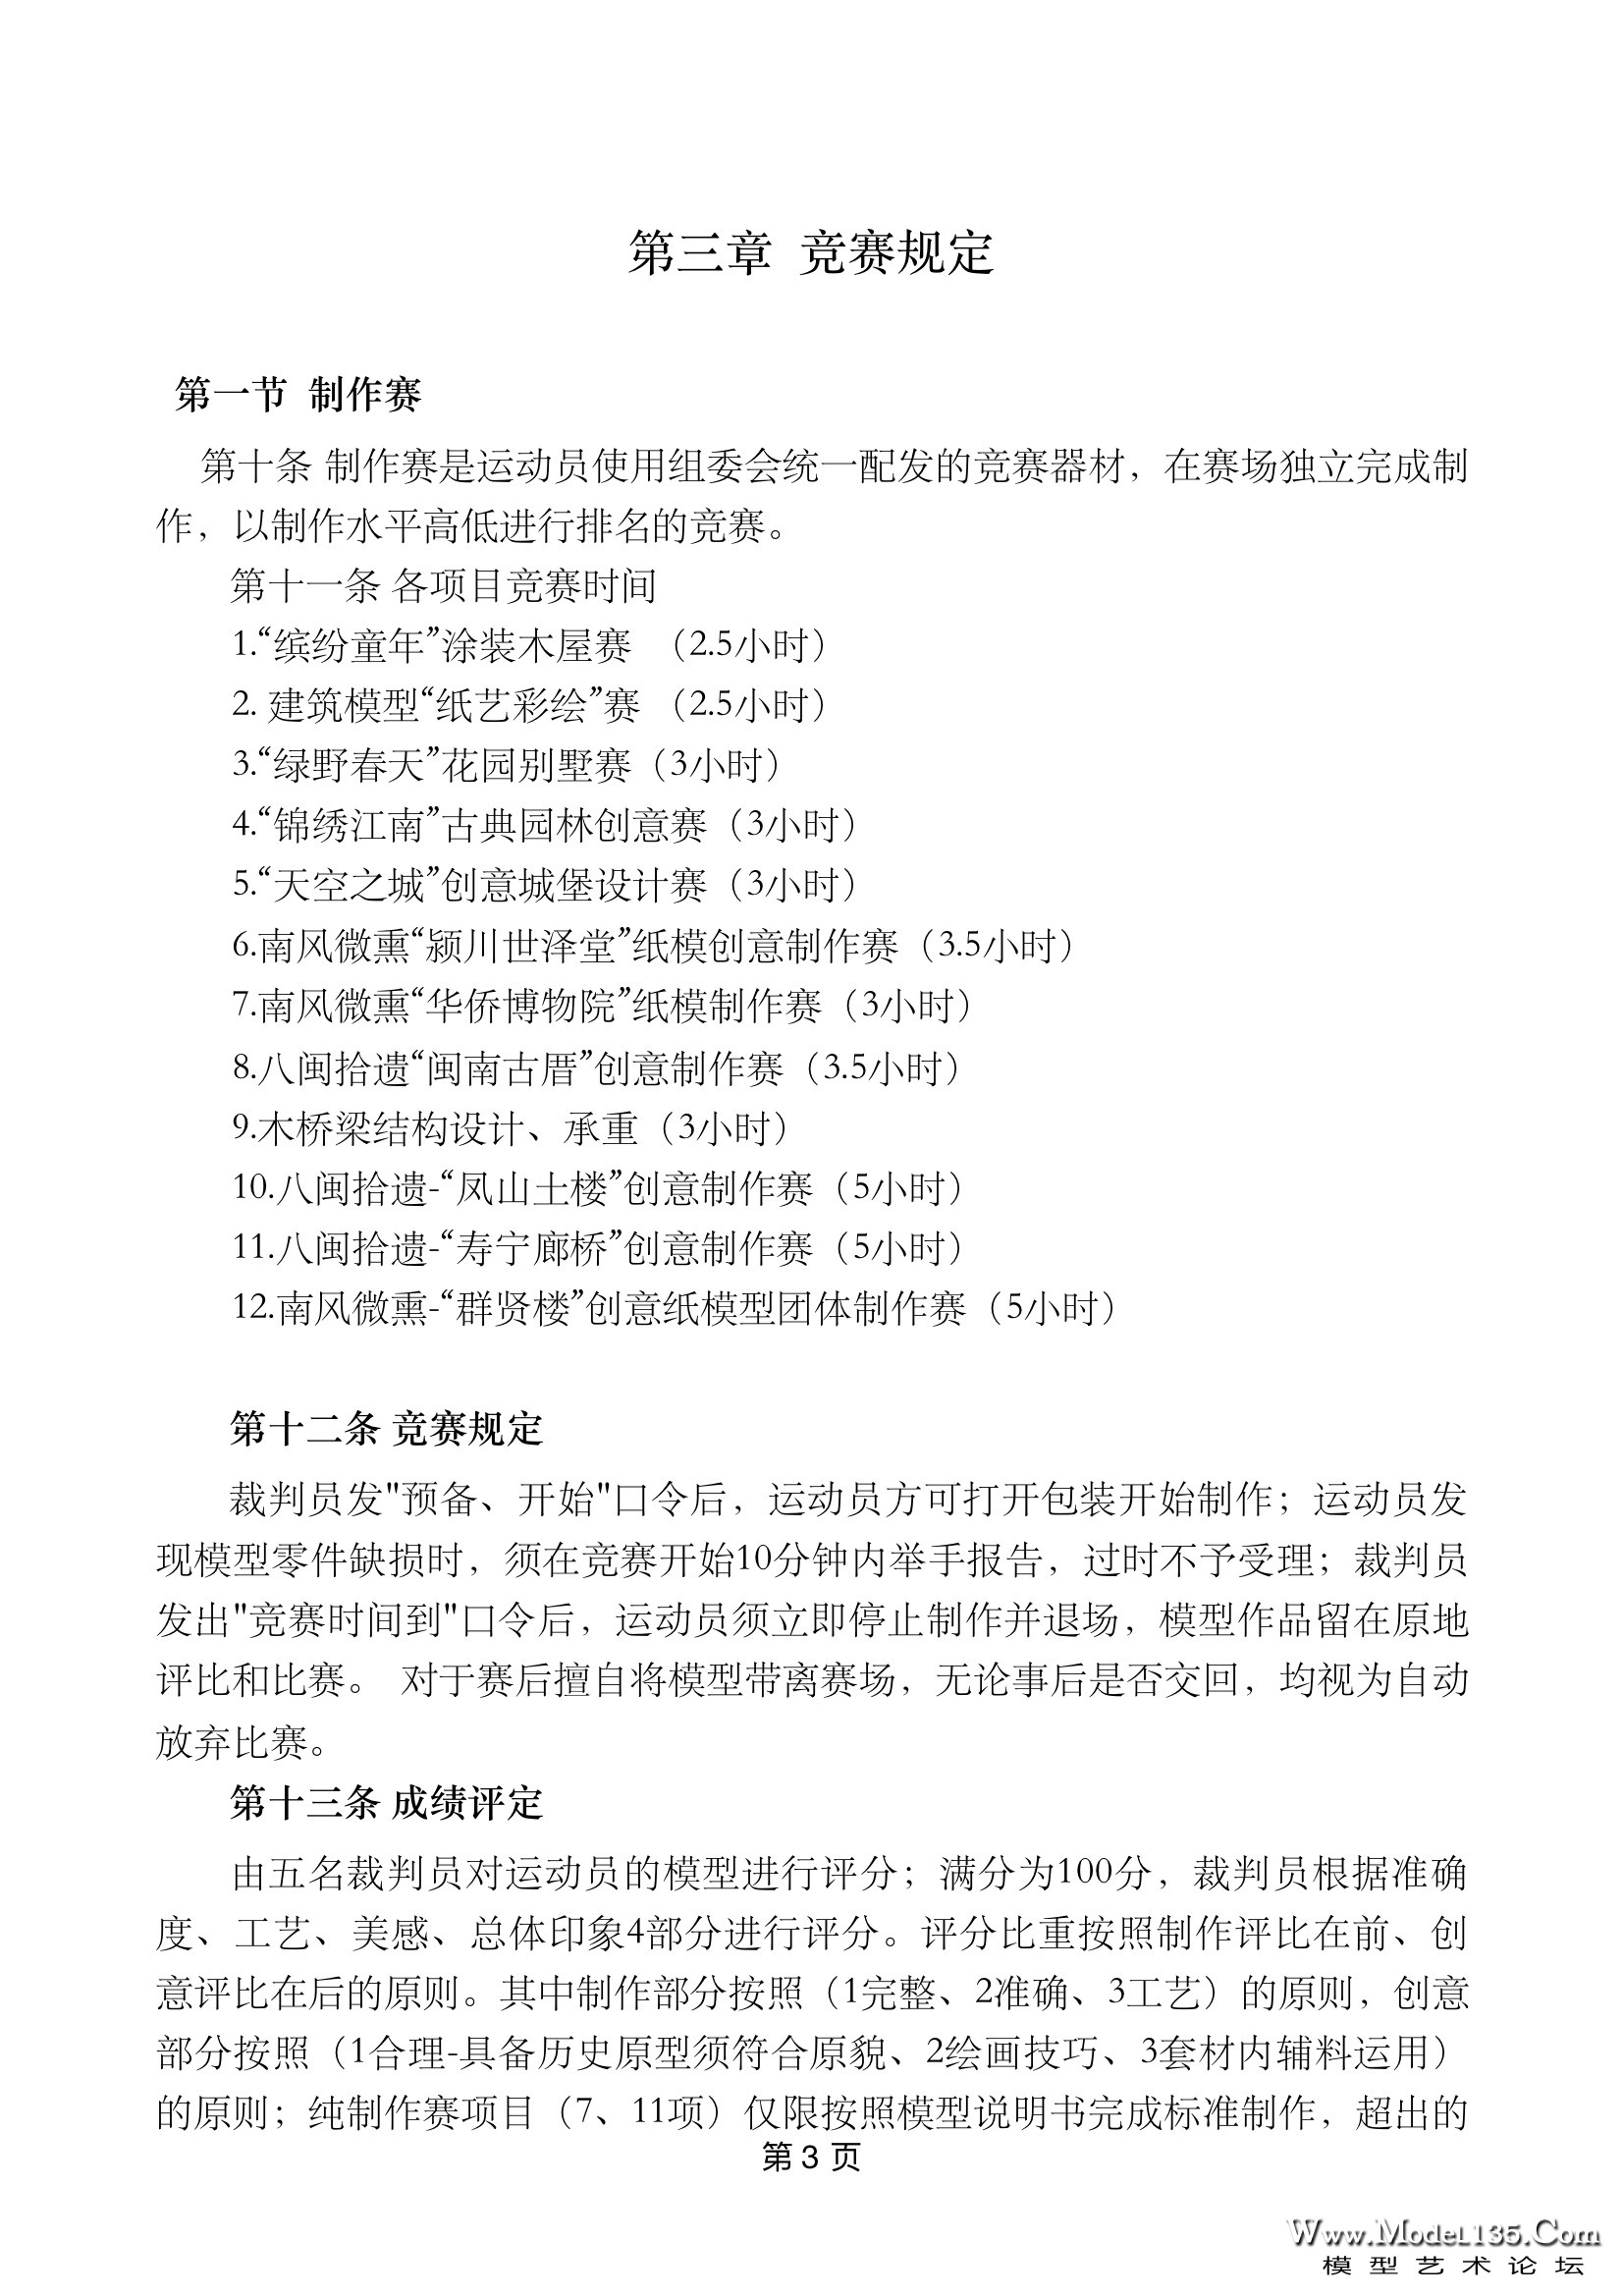 3-2019年福建省建筑模型锦标赛规则.jpg